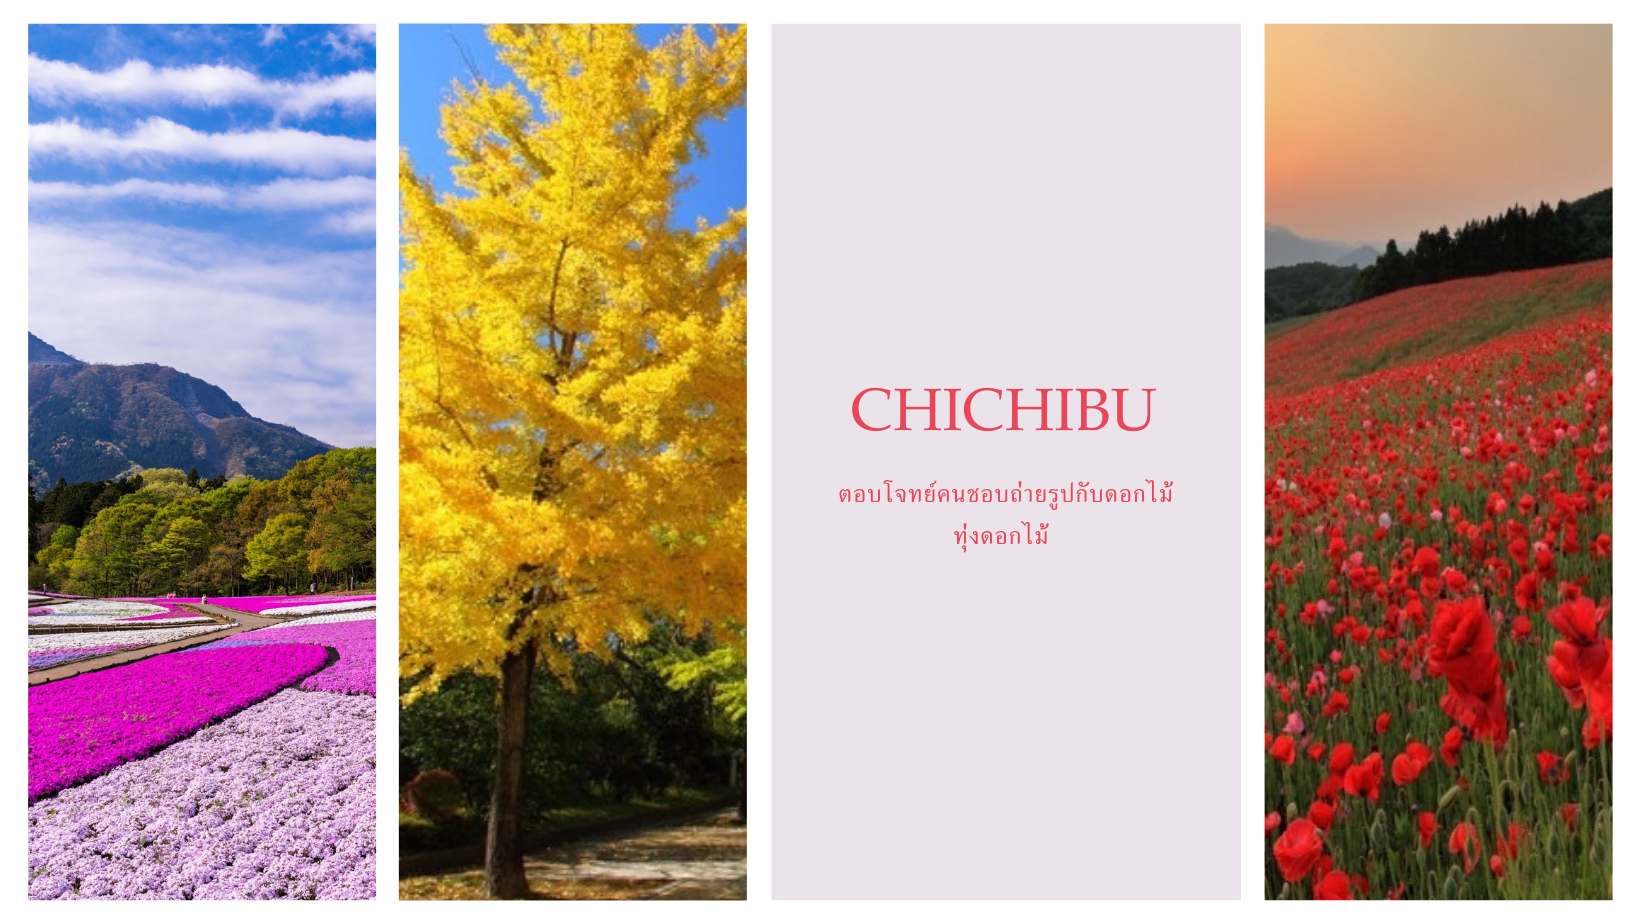 Chichibu ตอบโจทย์คนถ่ายรูปกับดอกไม้ทุ่งดอกไม้ญี่ปุ่น